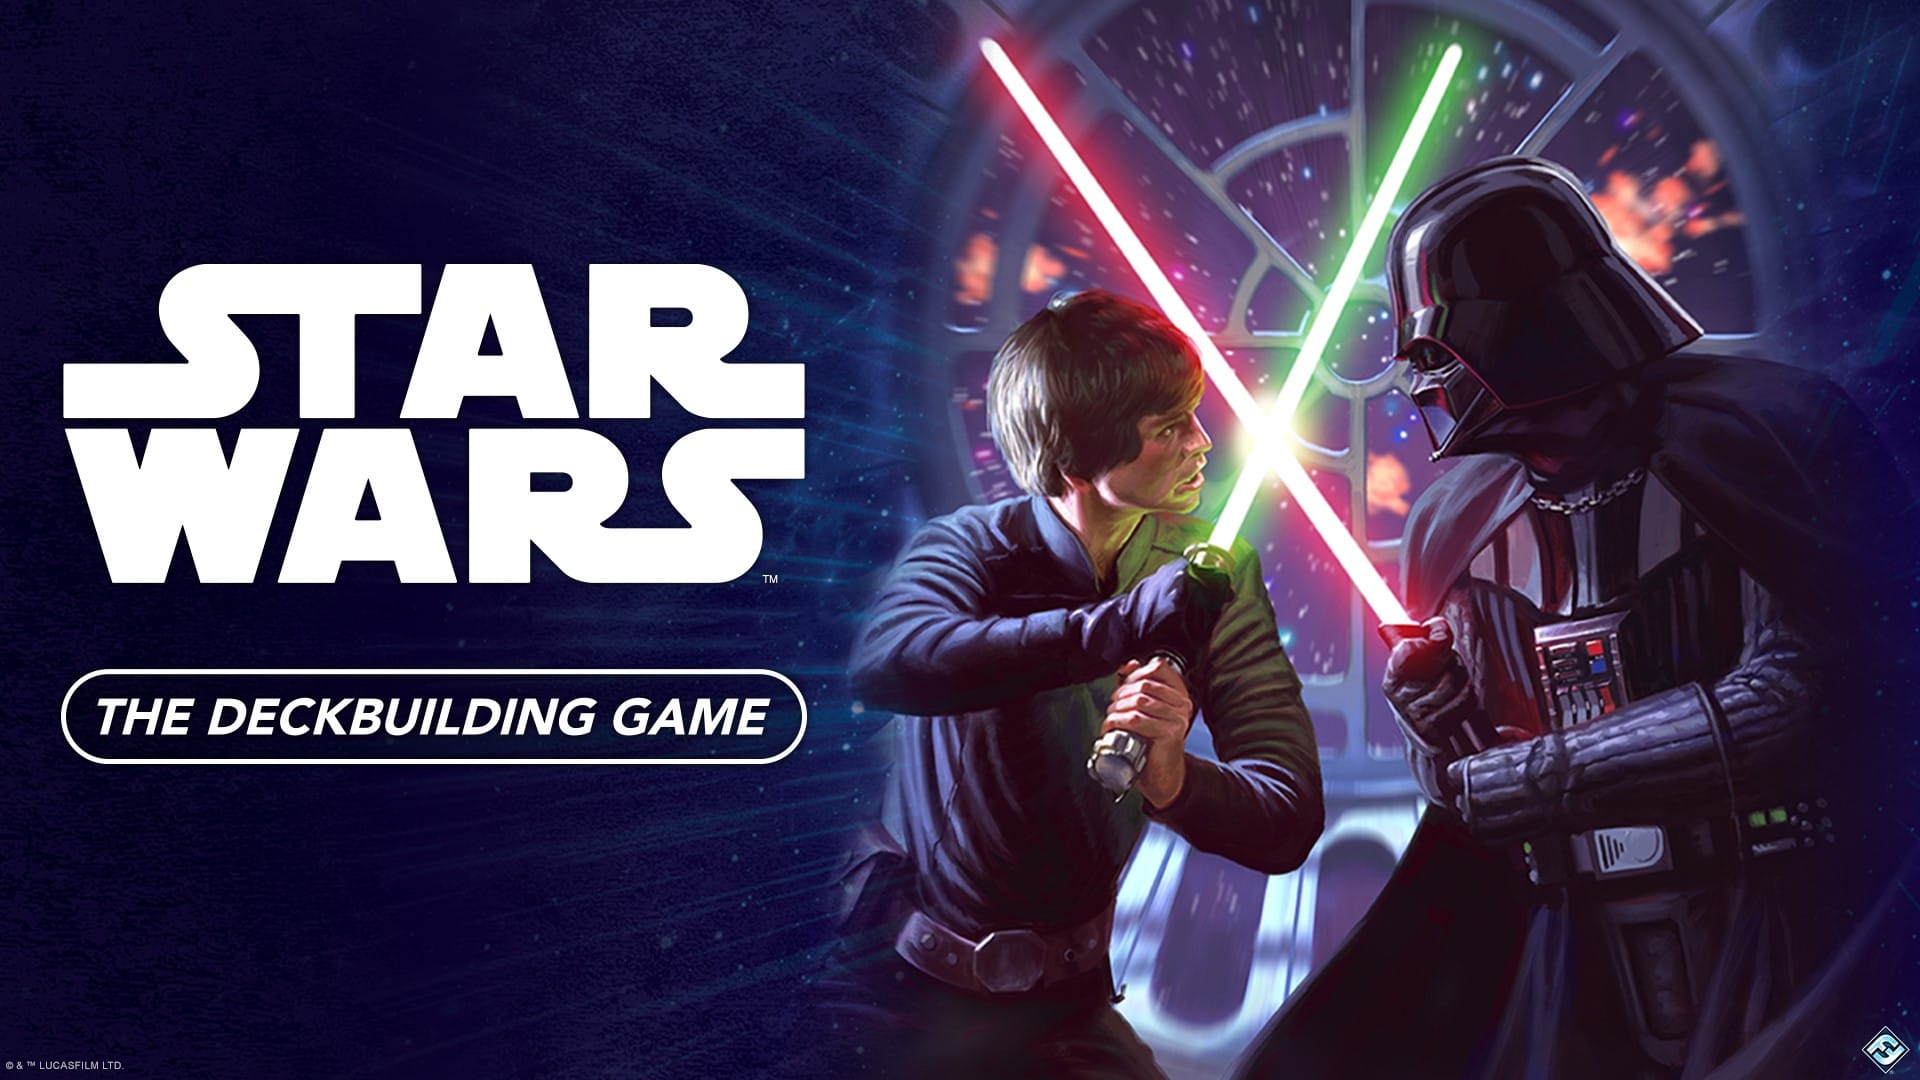 Star Wars: The Deckbuilding Game Details Revealed